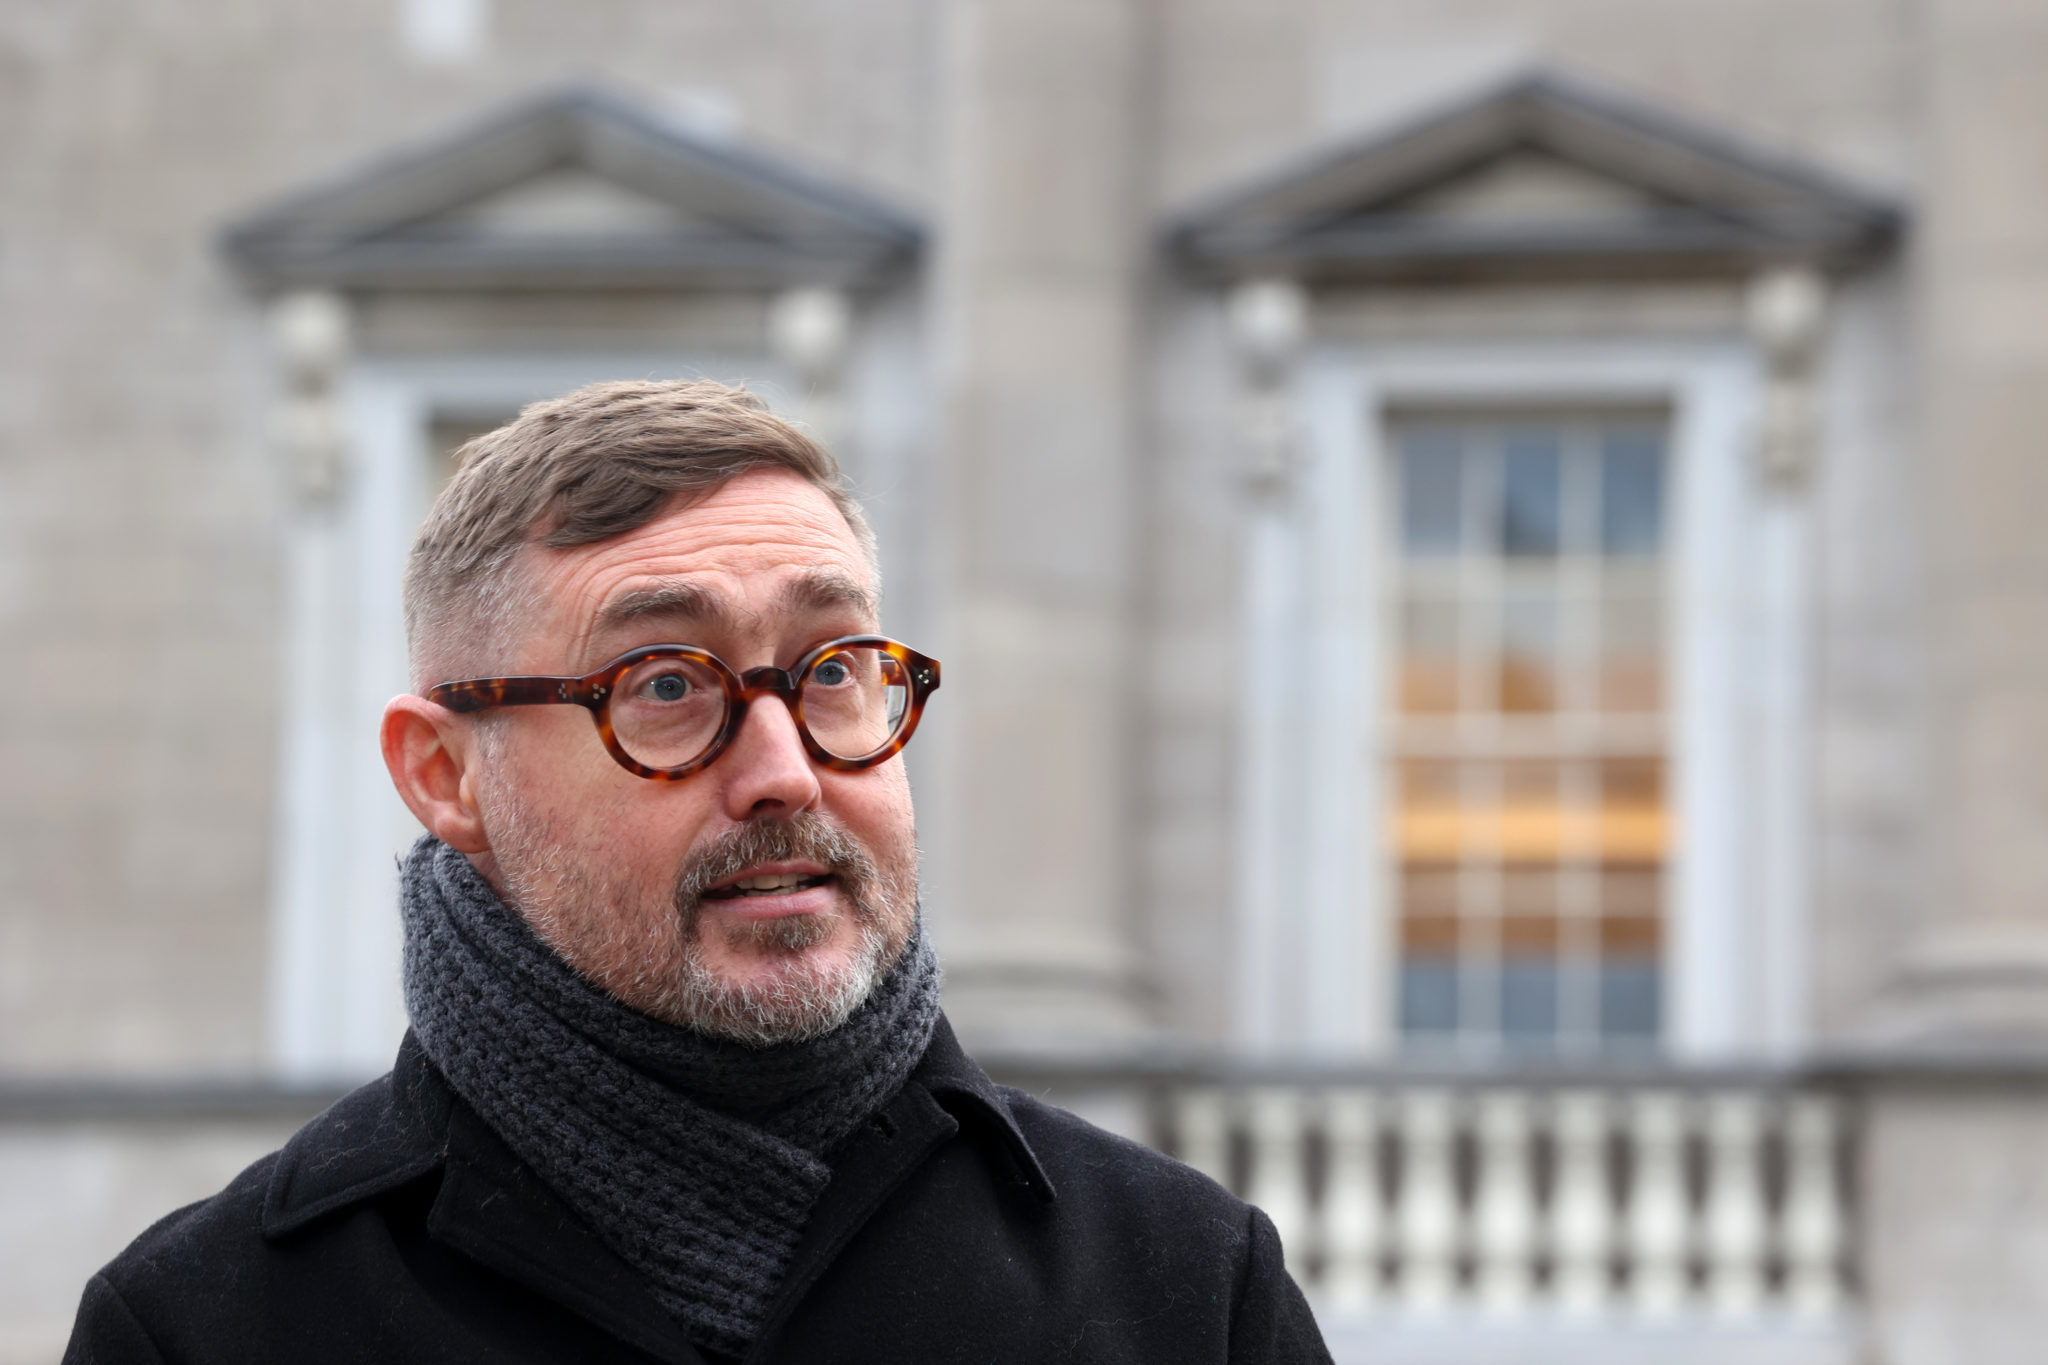 Sinn Fein spokesperson on housing Eoin O Broin on the plinth outside Leinster House in January 2022